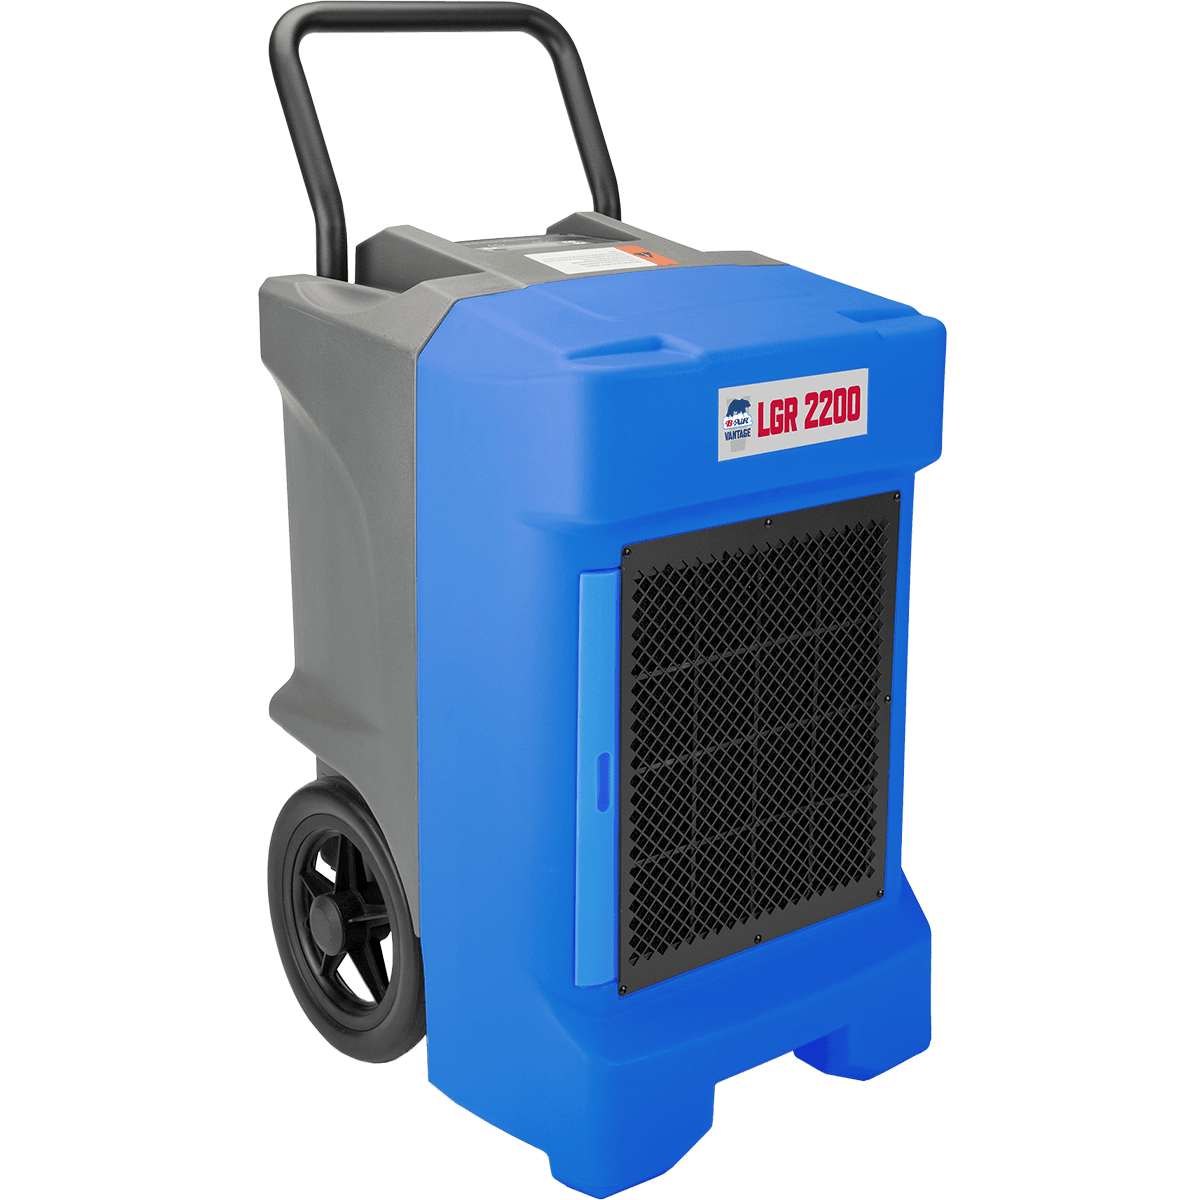 B-air Vantage Lrg 2200 Dehumidifier - Blue